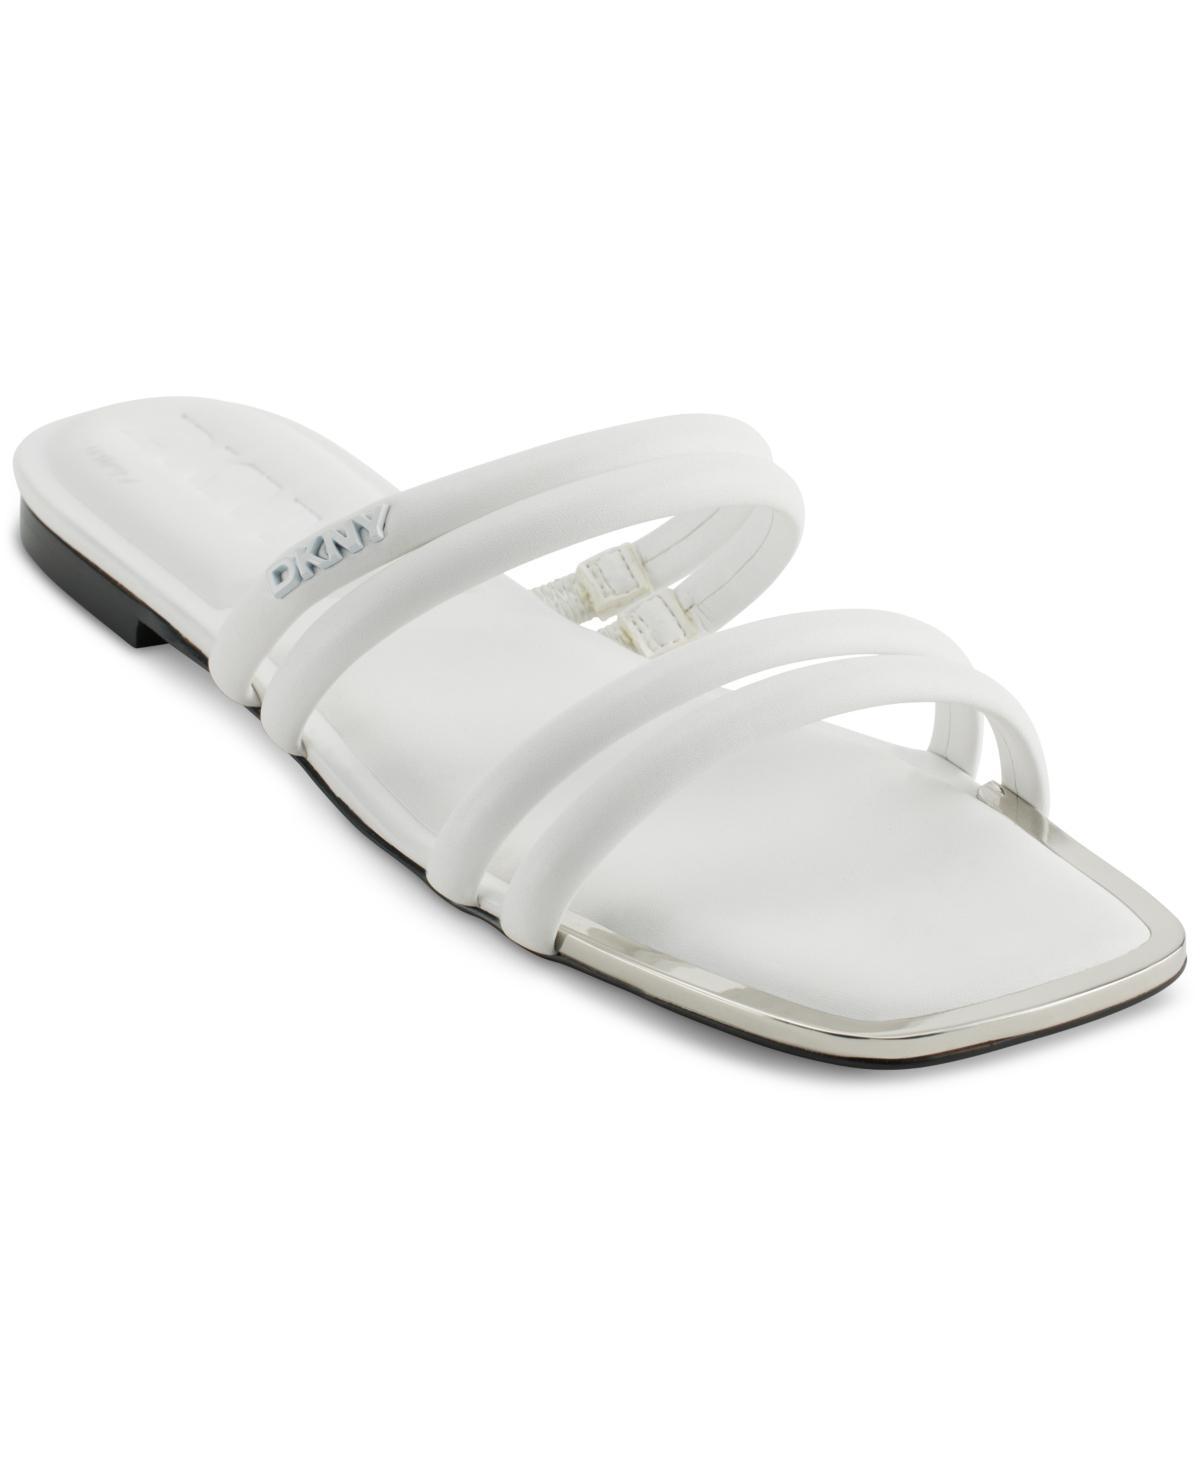 DKNY Square Toe Slide Sandal Product Image